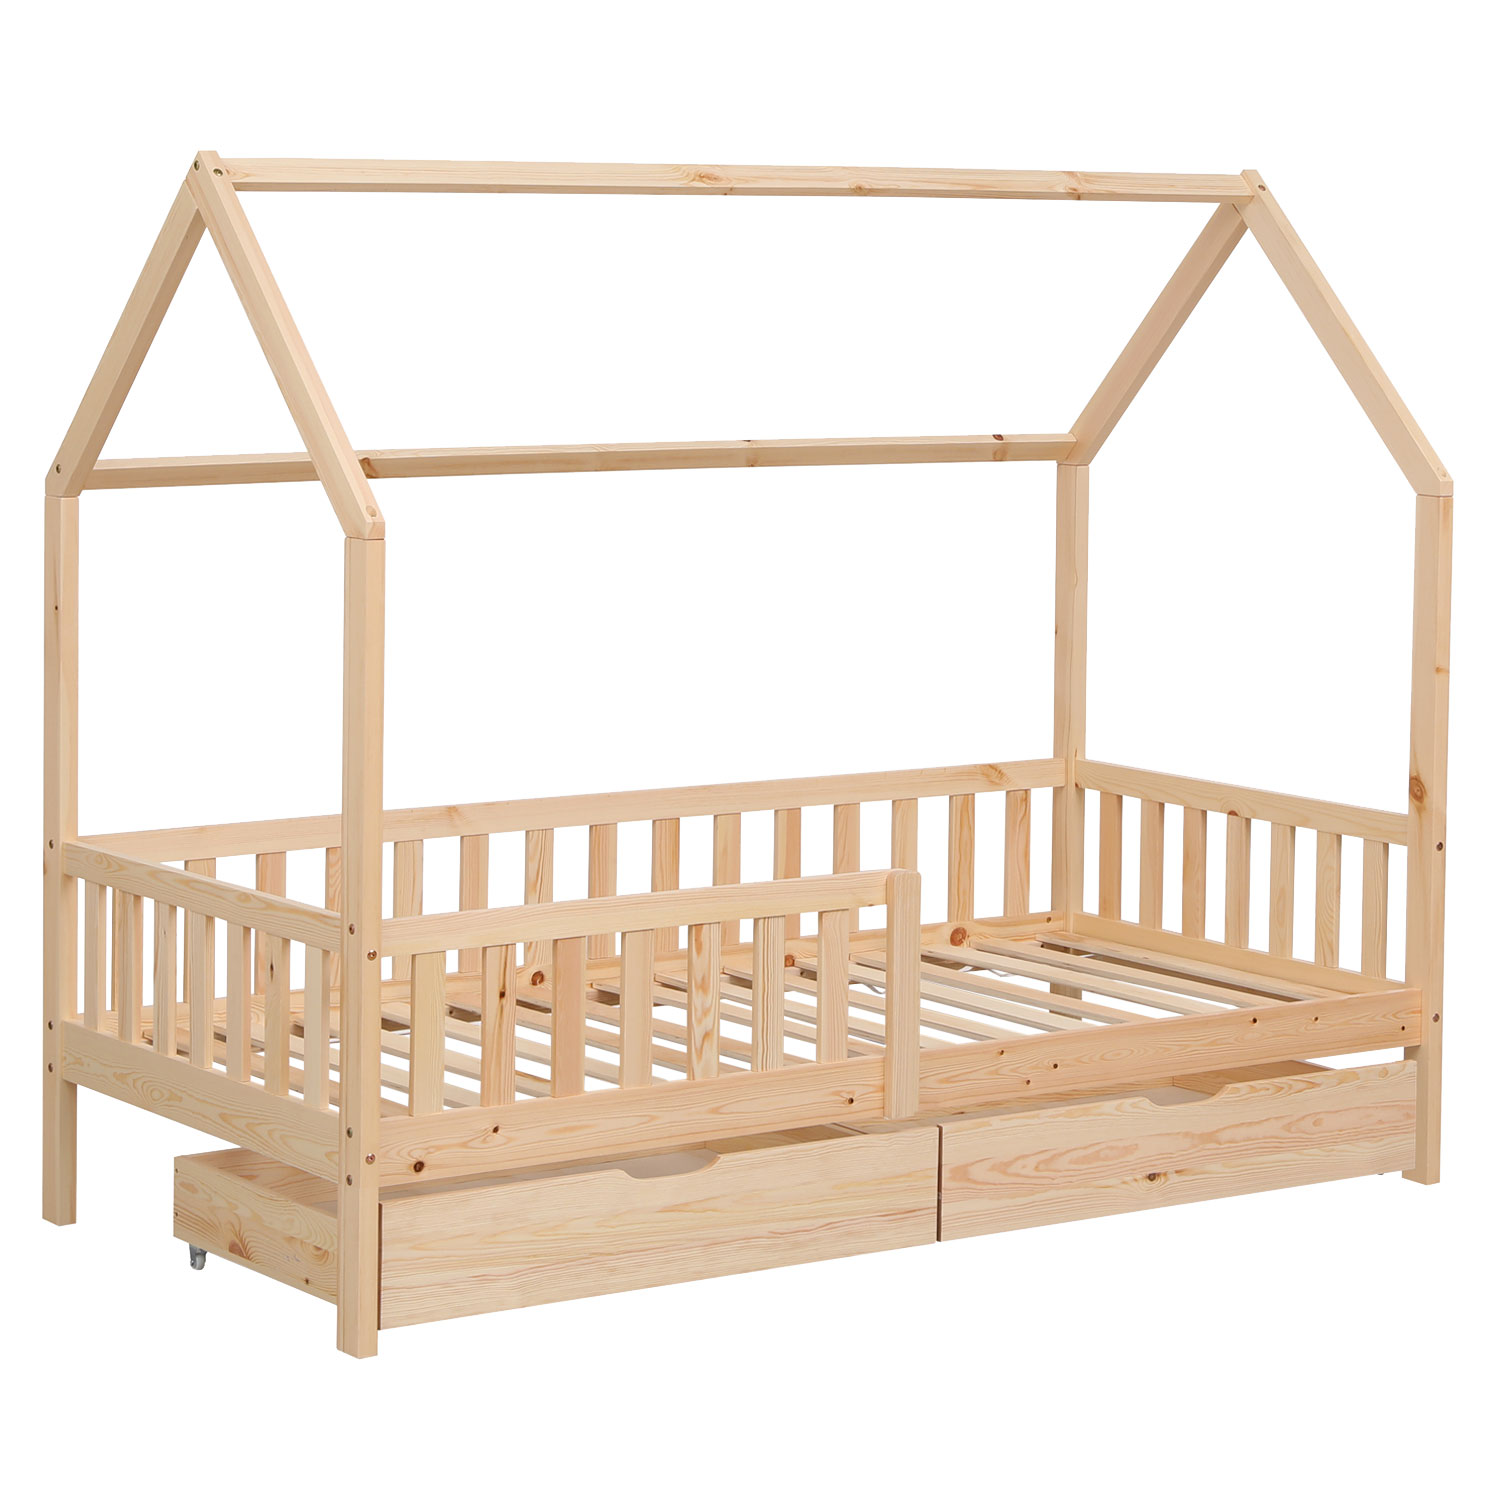 Baumhausbett für Kinder 190x90cm aus Holz mit Schubladen MARCEAU